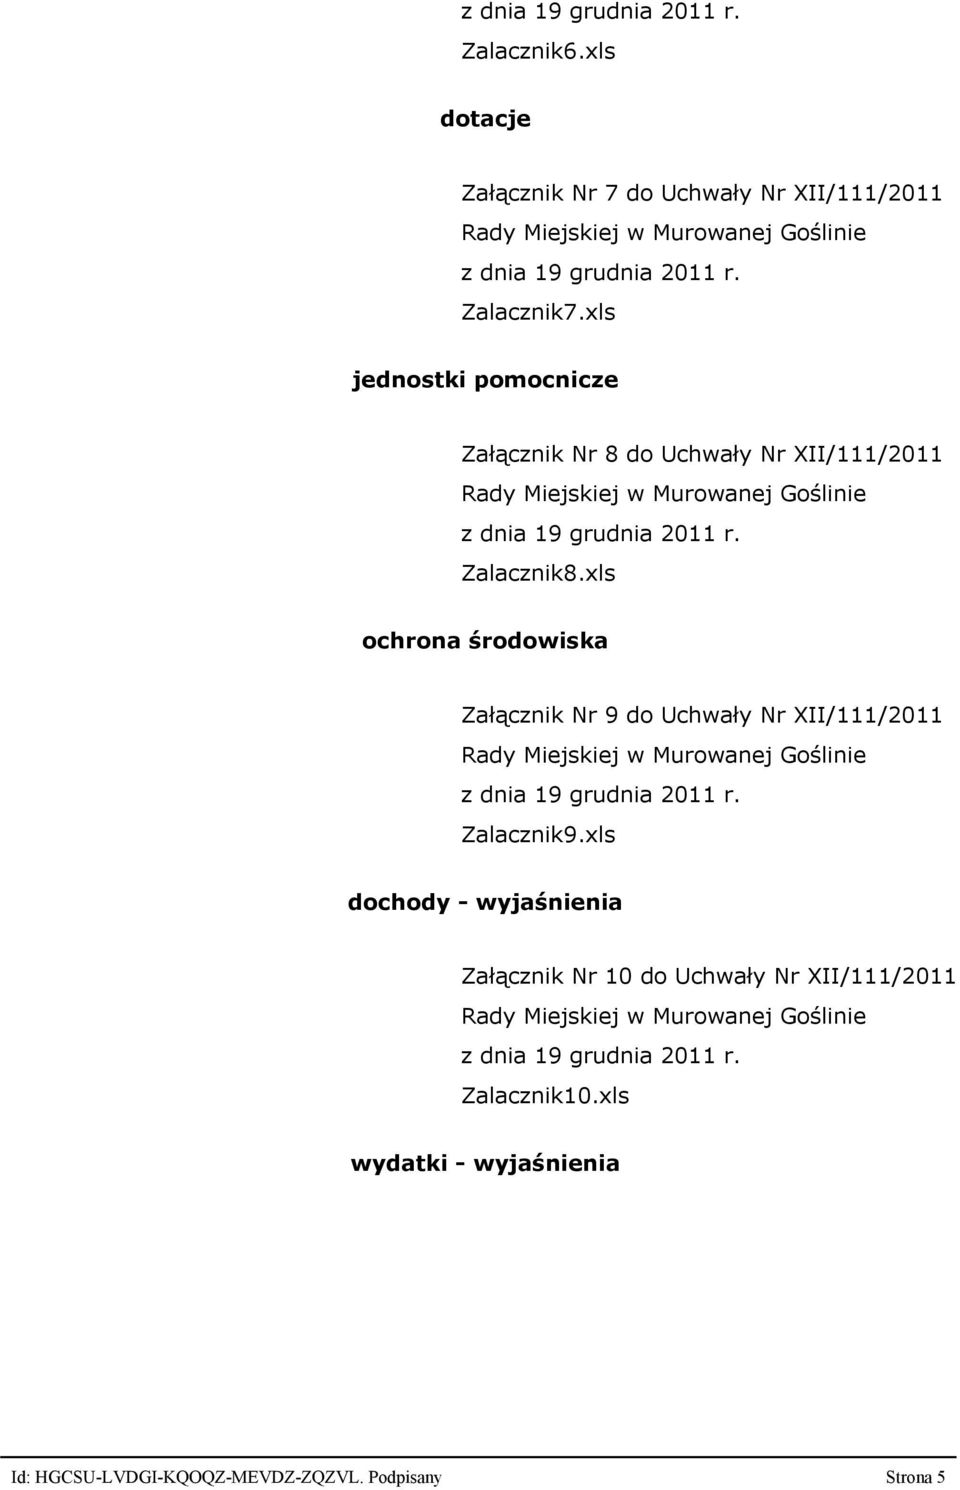 xls ochrona środowiska Załącznik Nr 9 do Uchwały Nr XII/111/2011 z dnia 19 grudnia 2011 r. Zalacznik9.